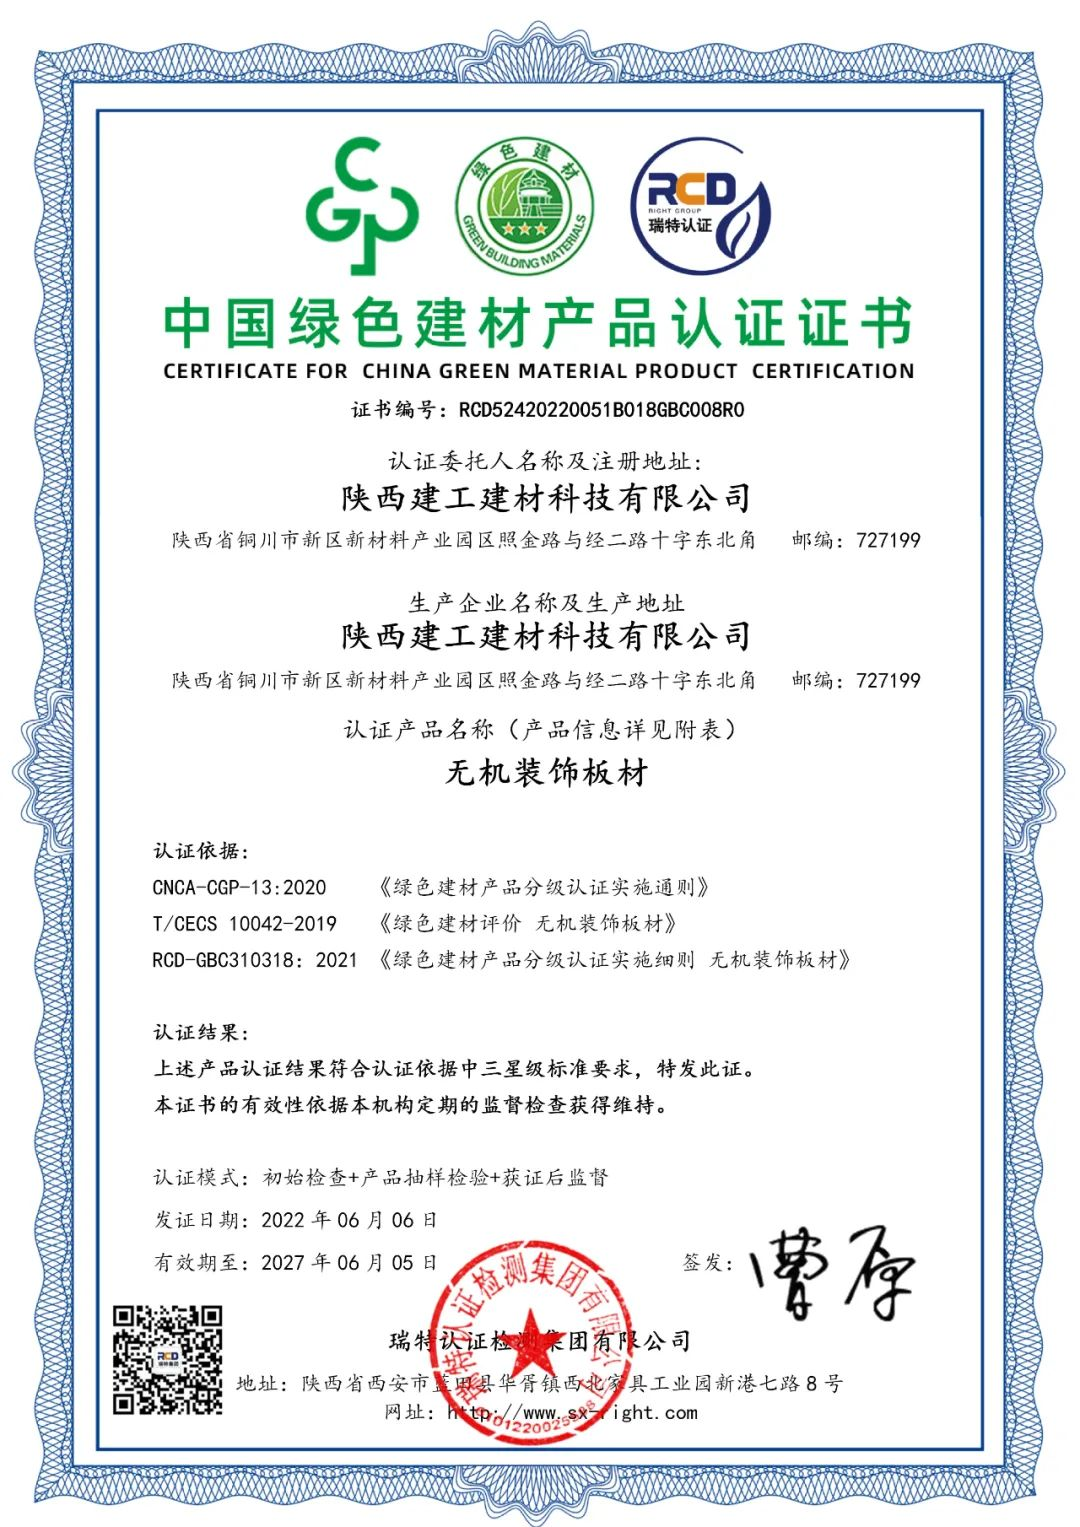 千亿球友会中国官方网站建材科技公司产品成功通过中国绿色建材产品最高级别认证